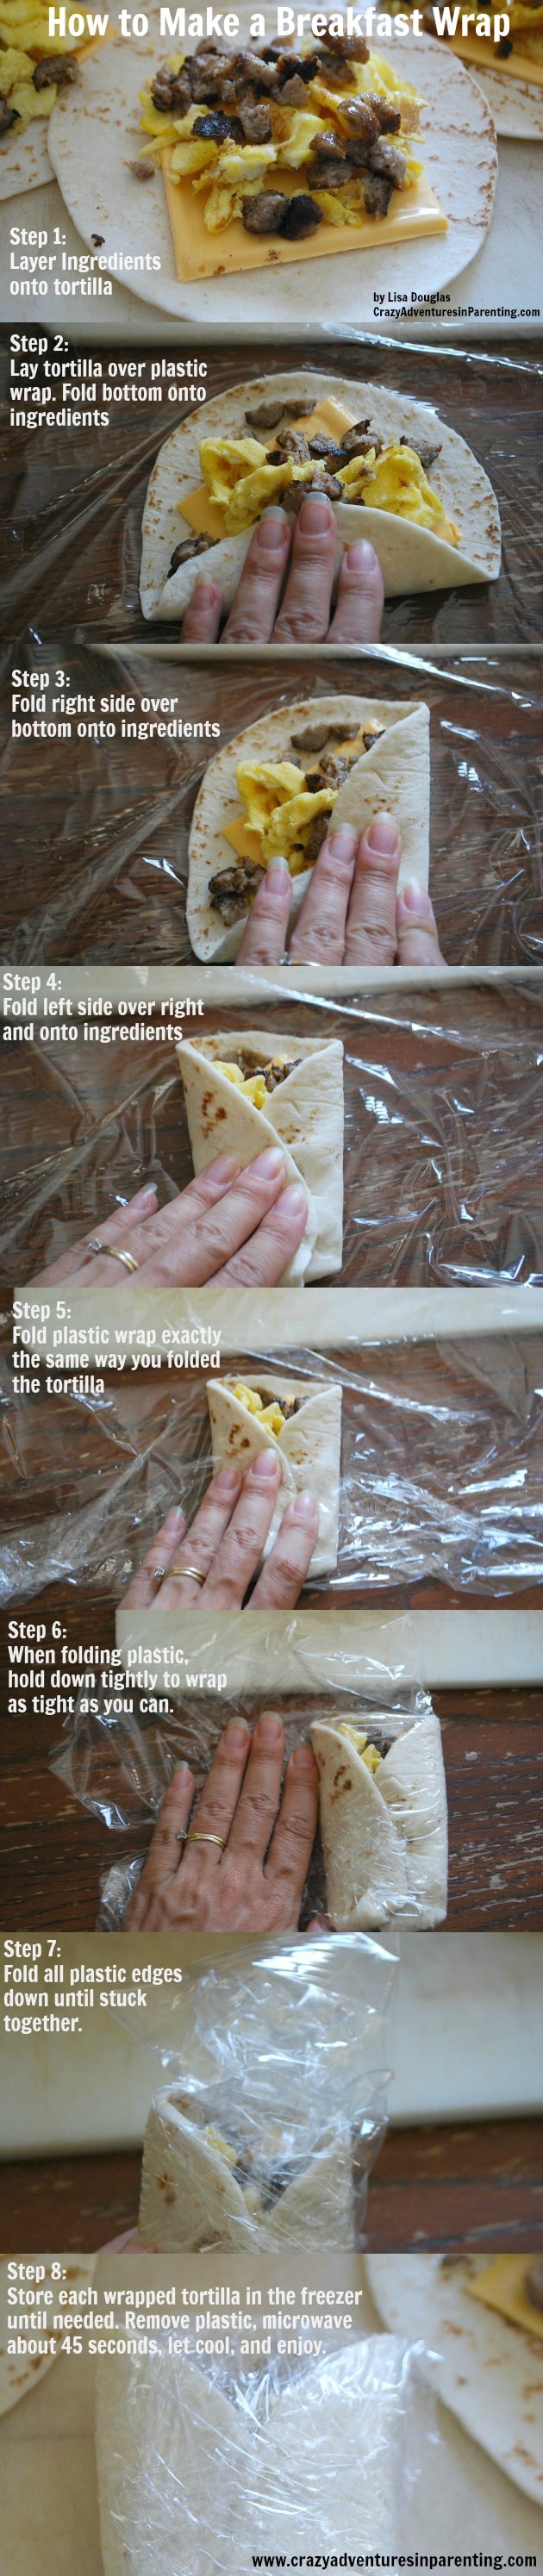 make ahead breakfast wrap instructions